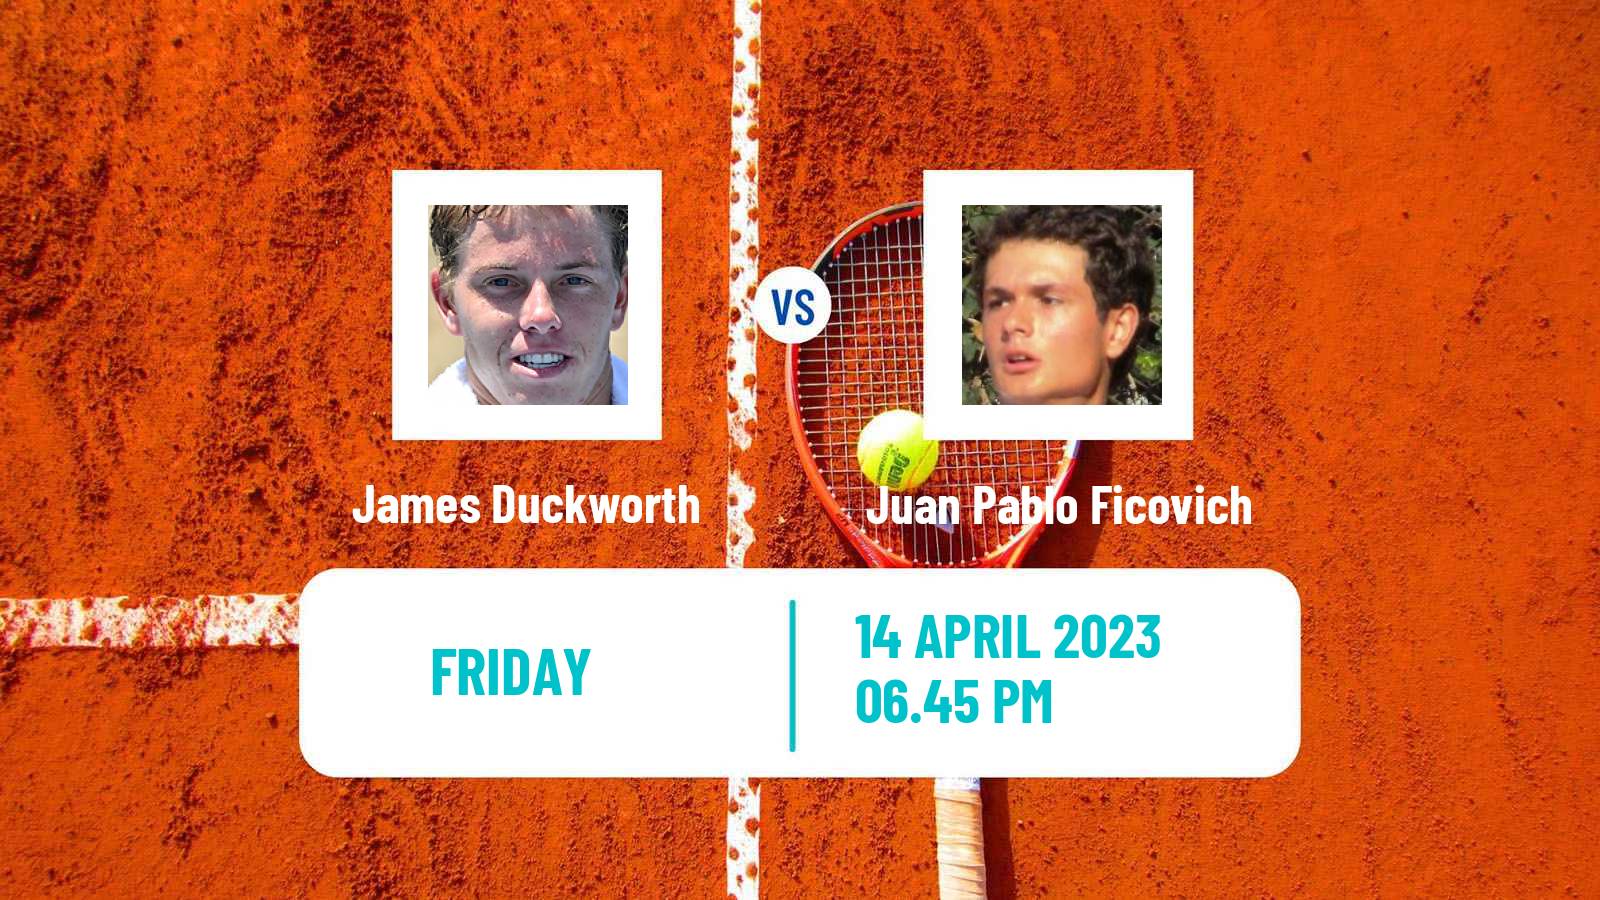 Tennis ATP Challenger James Duckworth - Juan Pablo Ficovich